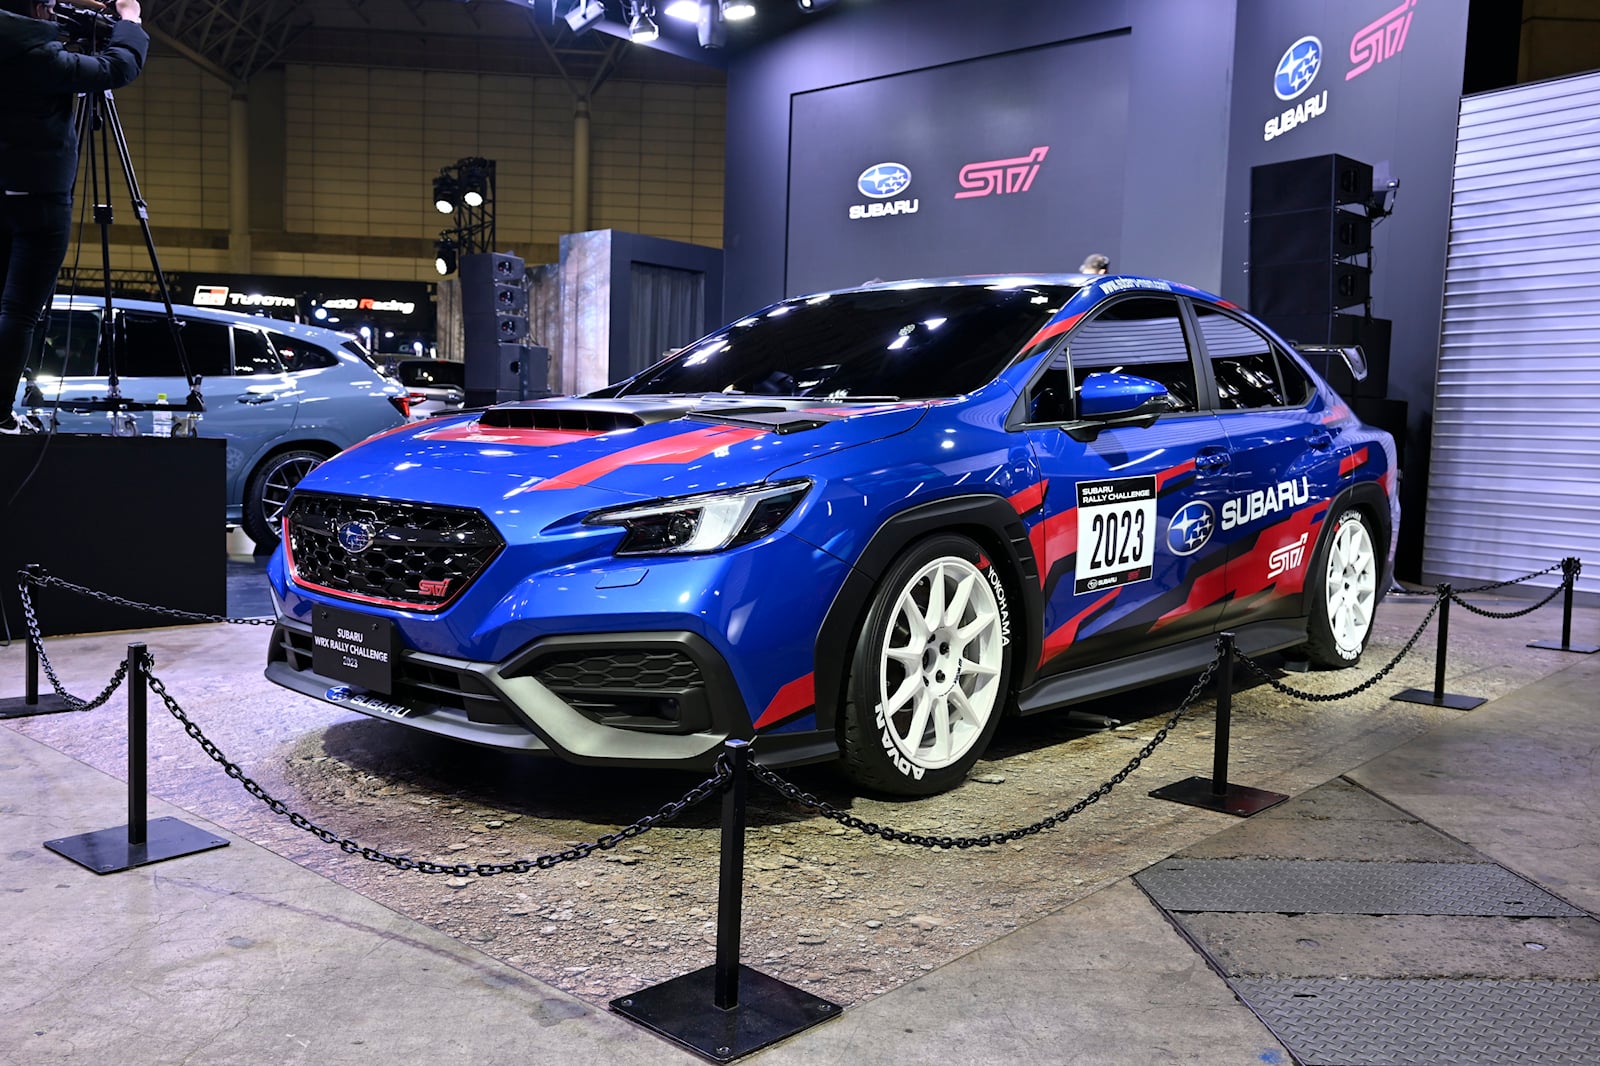 Наконец, Subaru примет участие в сезоне 2023 года во Всеяпонском чемпионате по ралли с недавно сформированной командой Subaru Rally Challenge. Благодаря пересмотру правил для этой серии Subaru разрабатывает новый автомобиль на базе WRX S4 только для 